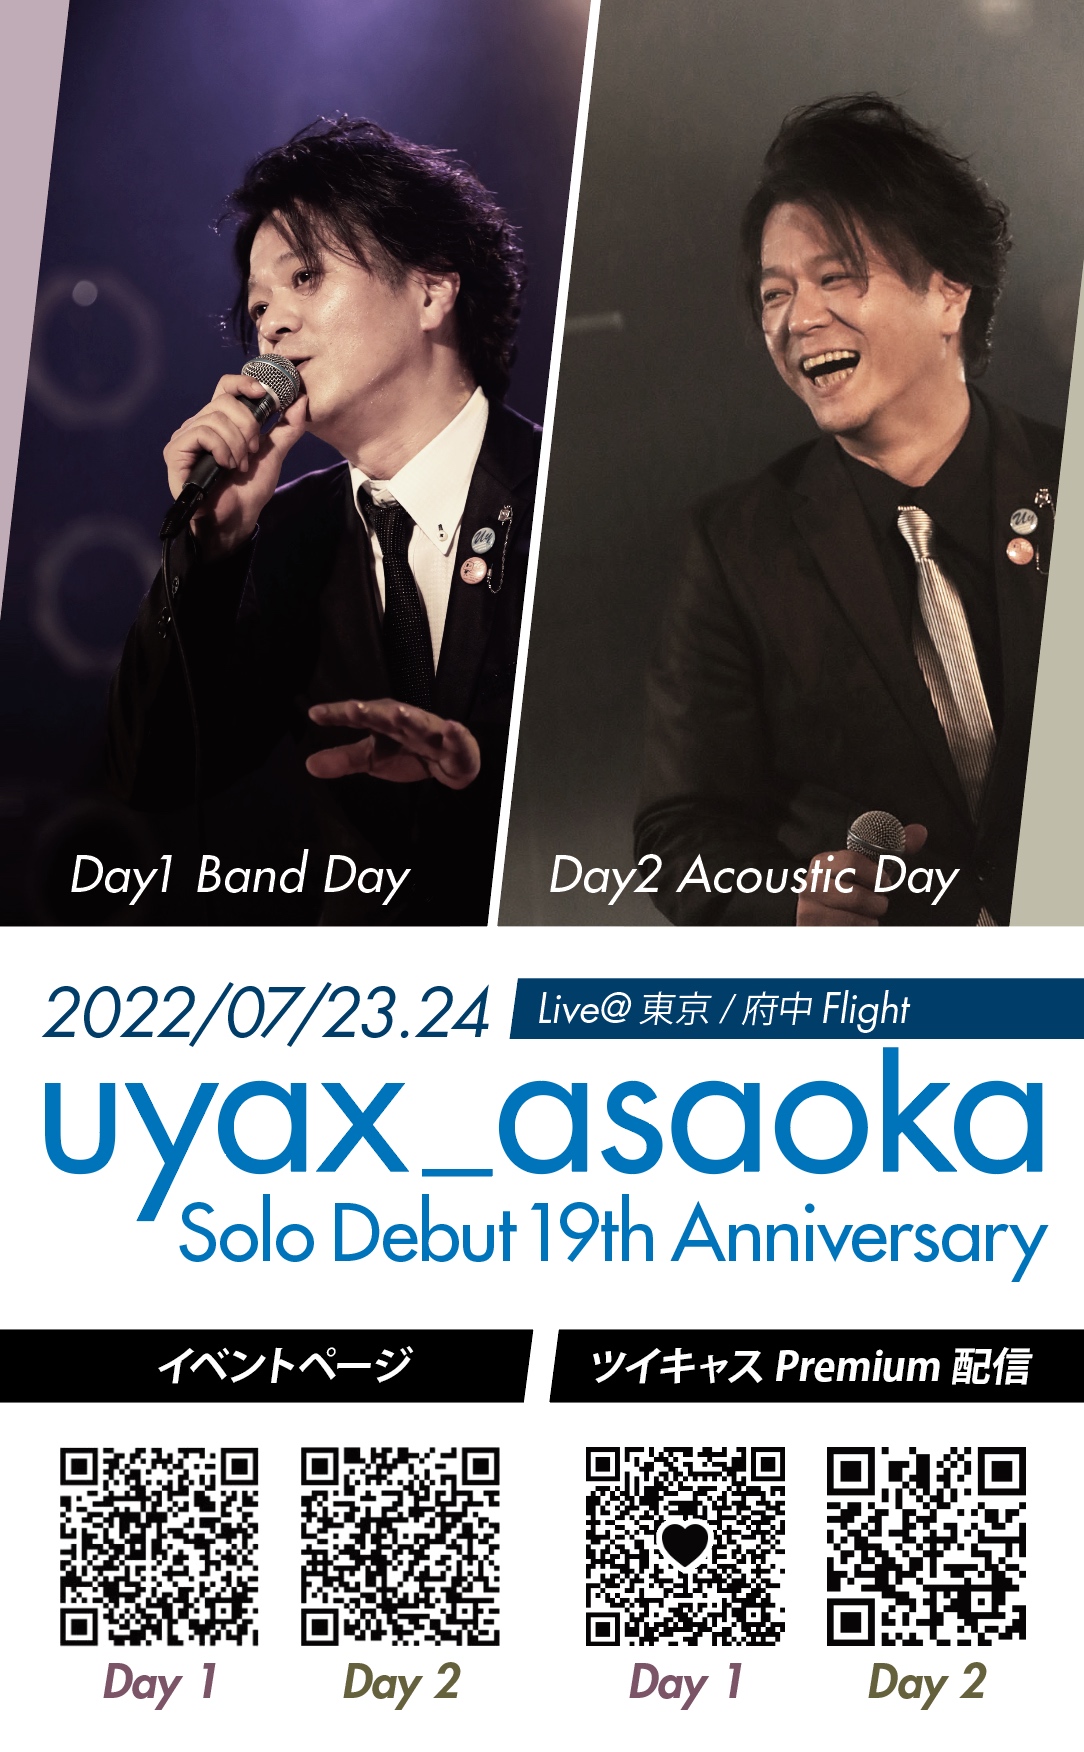 【DAY1】U-ya Asaoka Solo Debut 19th Anniversary 【Band】